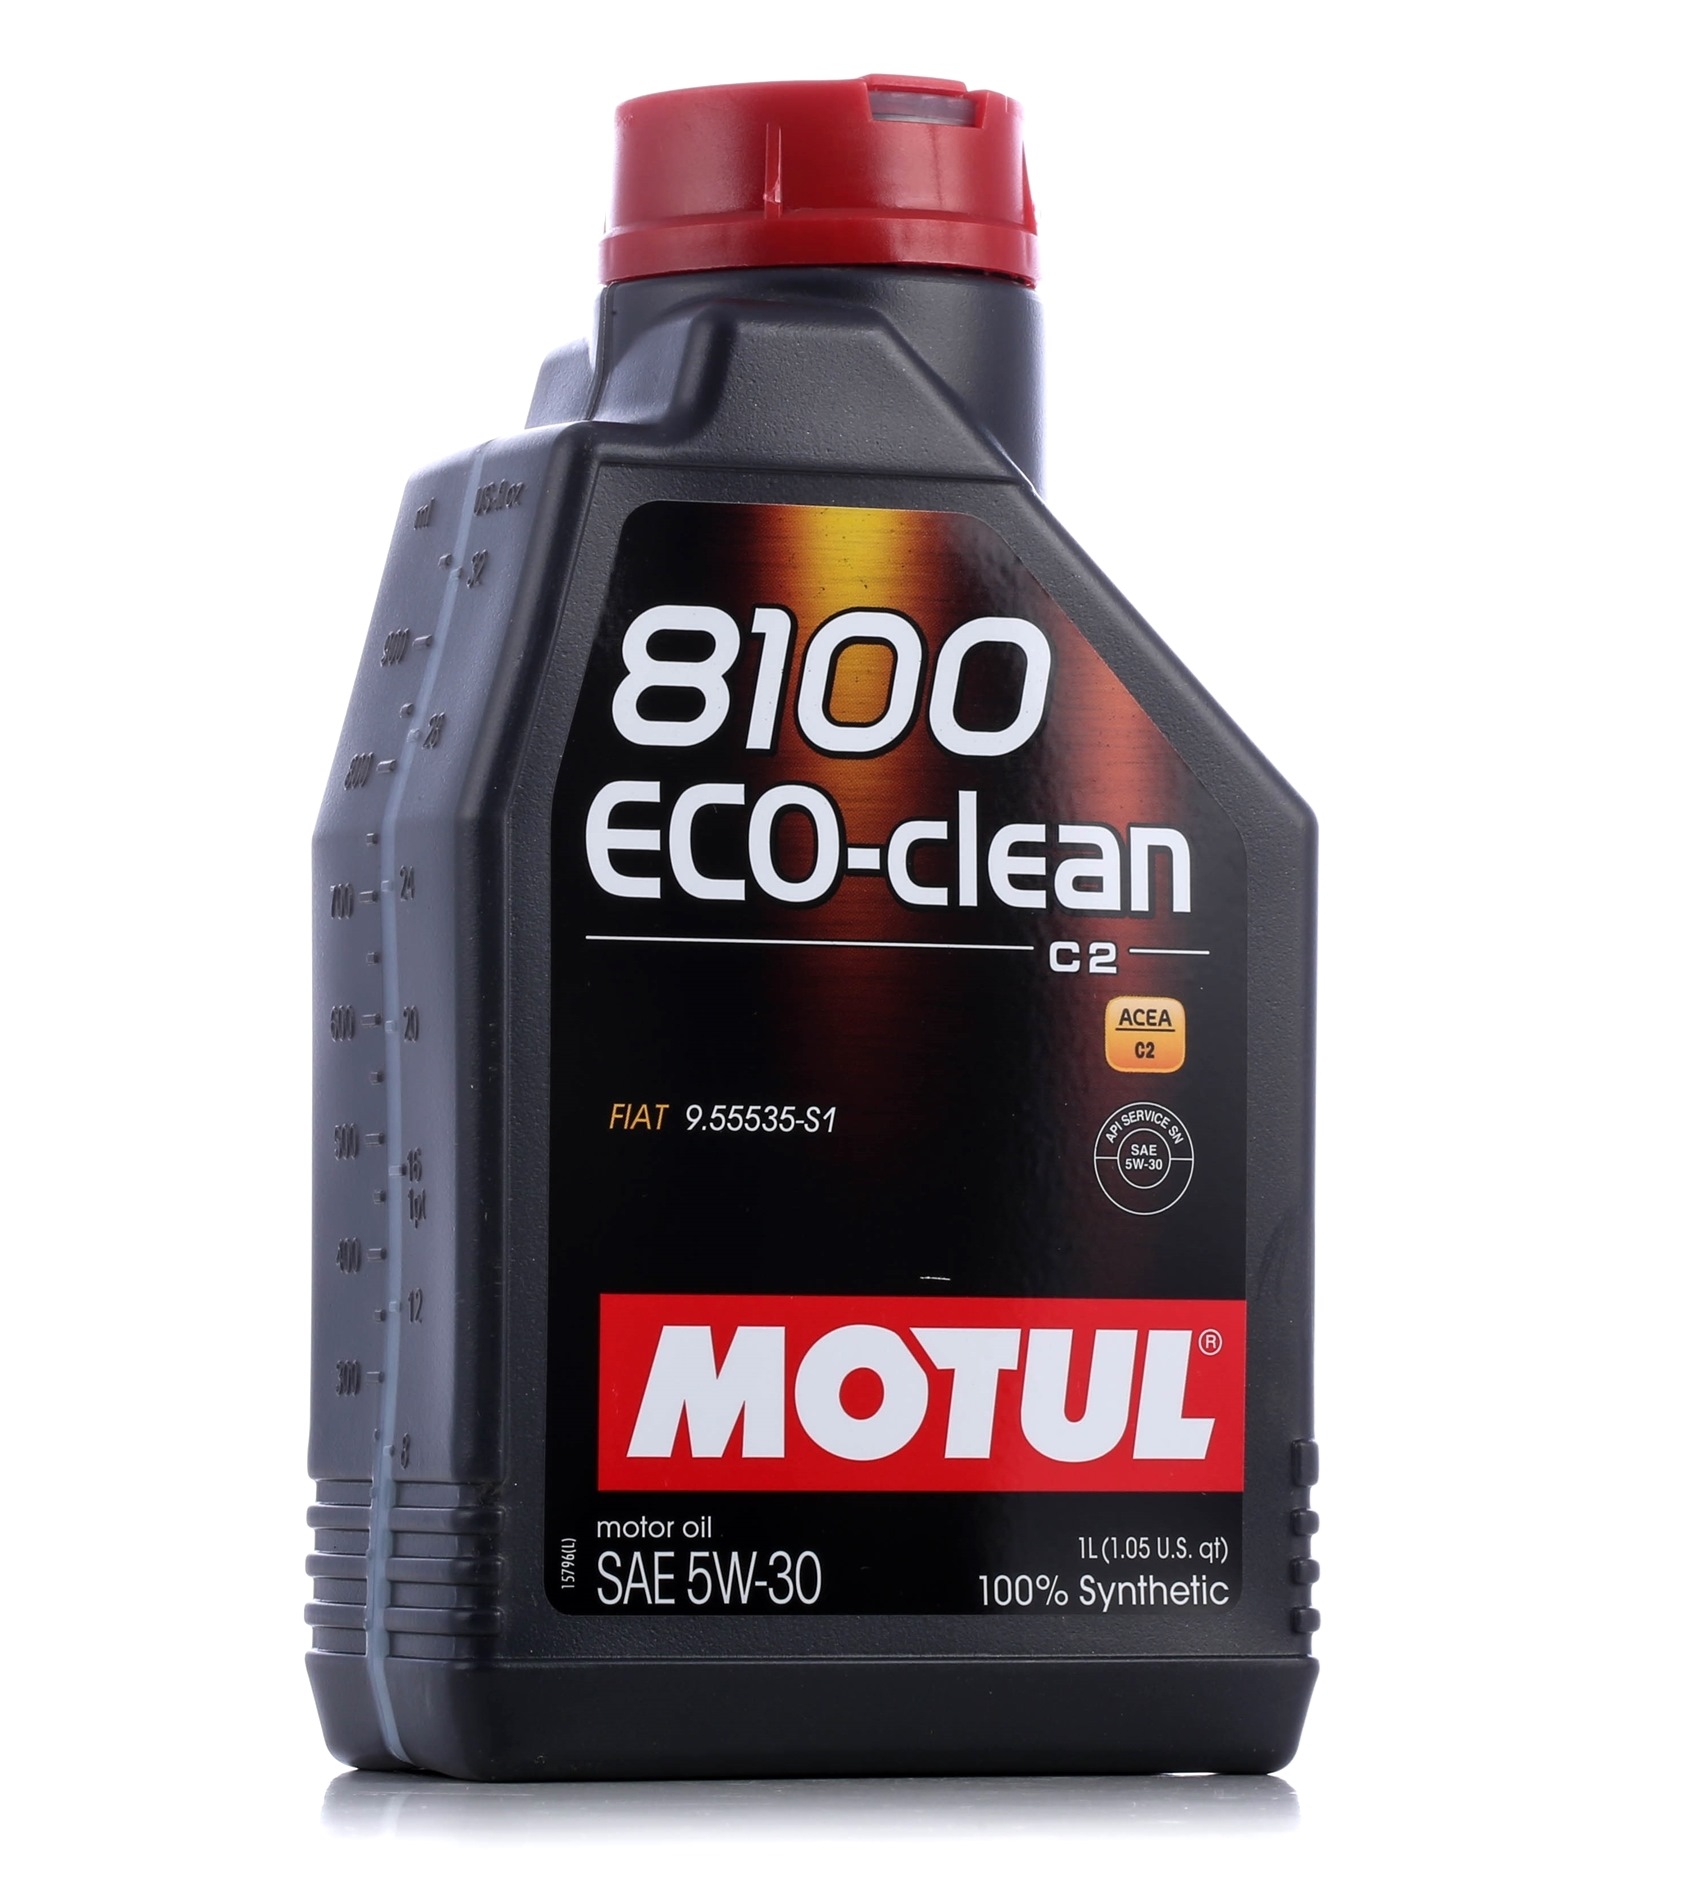 Great value for money - MOTUL Engine oil 101542